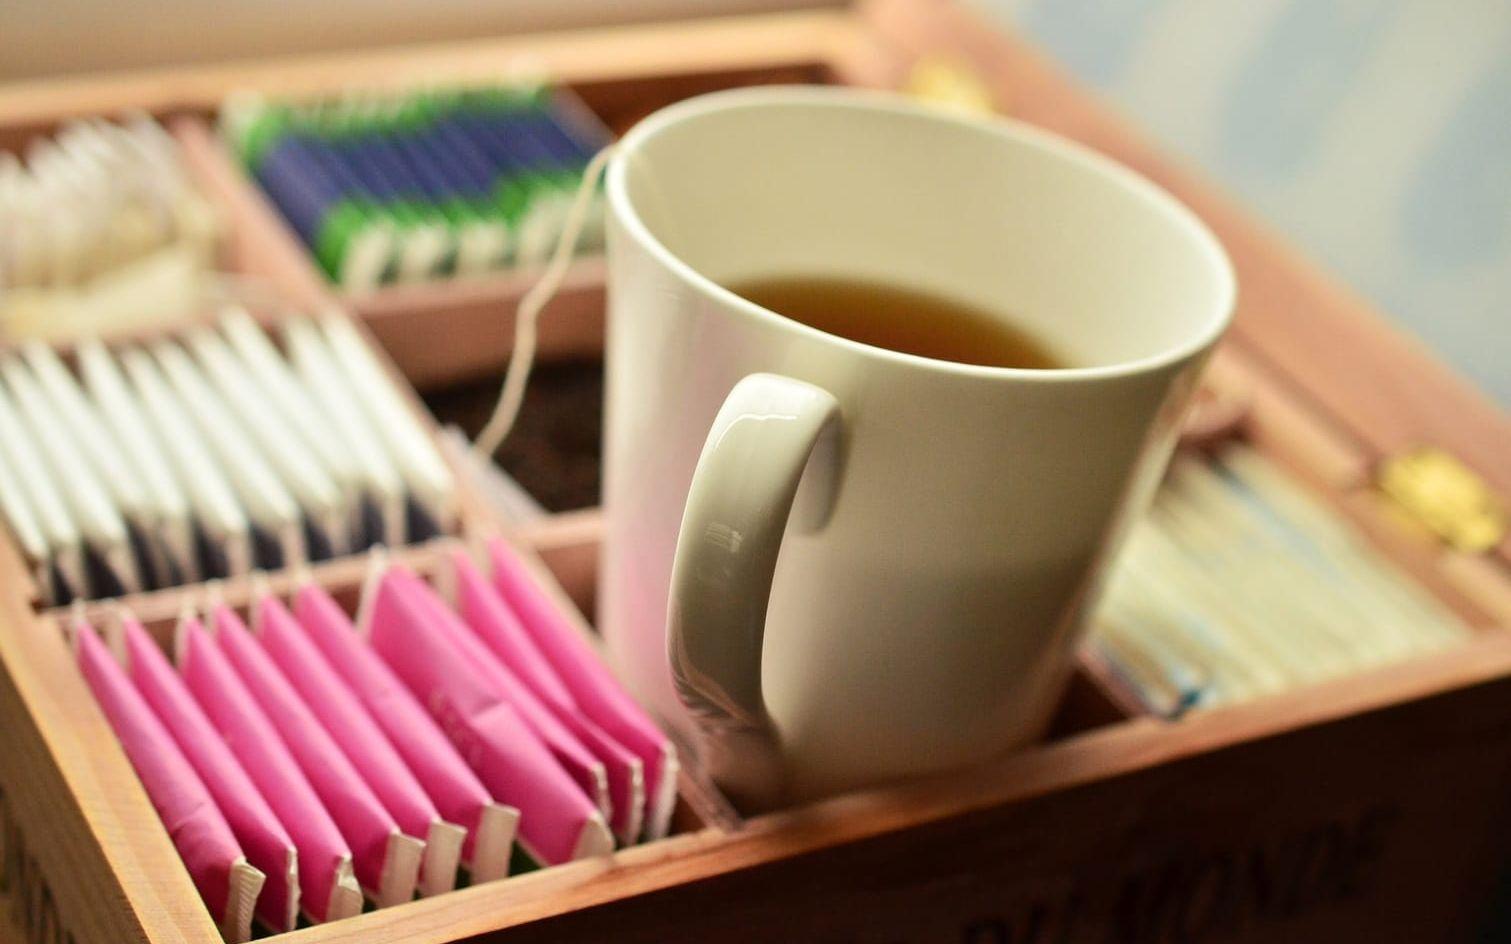 Svart te innehåller ämnen som hjälper till att stärka immunförsvaret. I en studie fick en testgrupp dricka fem koppar svart te under 2 till fyra veckor medan den andra gruppen bara fick dricka snabbkaffe som saknar de aktiva ämnen som studien fokuserade på. Immunförsvaret hos te-gruppen svarade betydligt bättre på angrepp än test-gruppen.